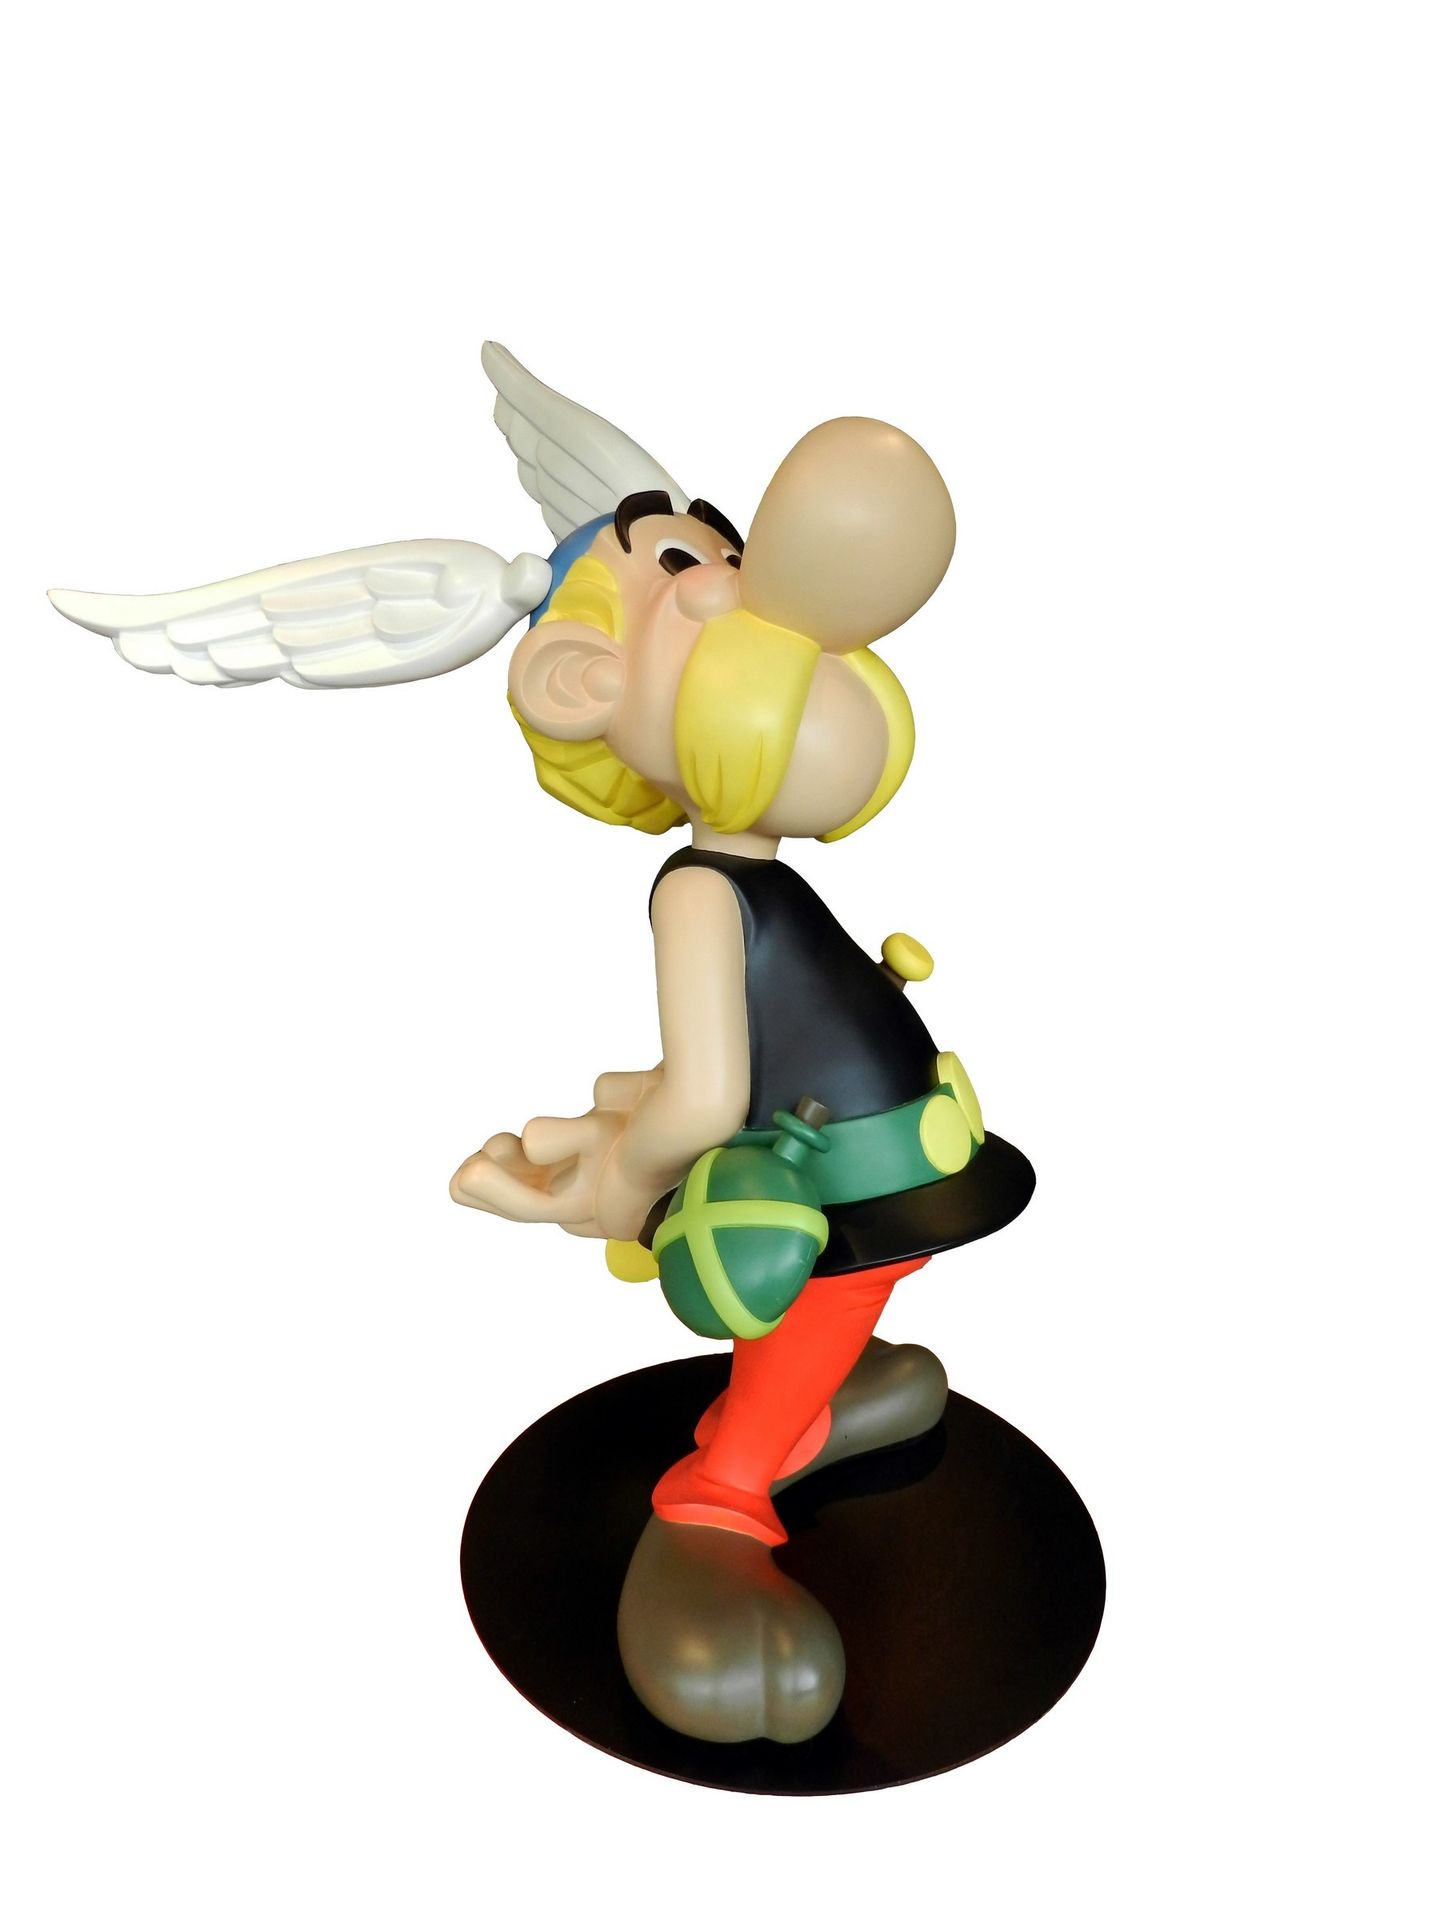 UDERZO Asterix. Created by Leblon-Delienne (2001). Asterix statue, 100cm. Refere&hellip;